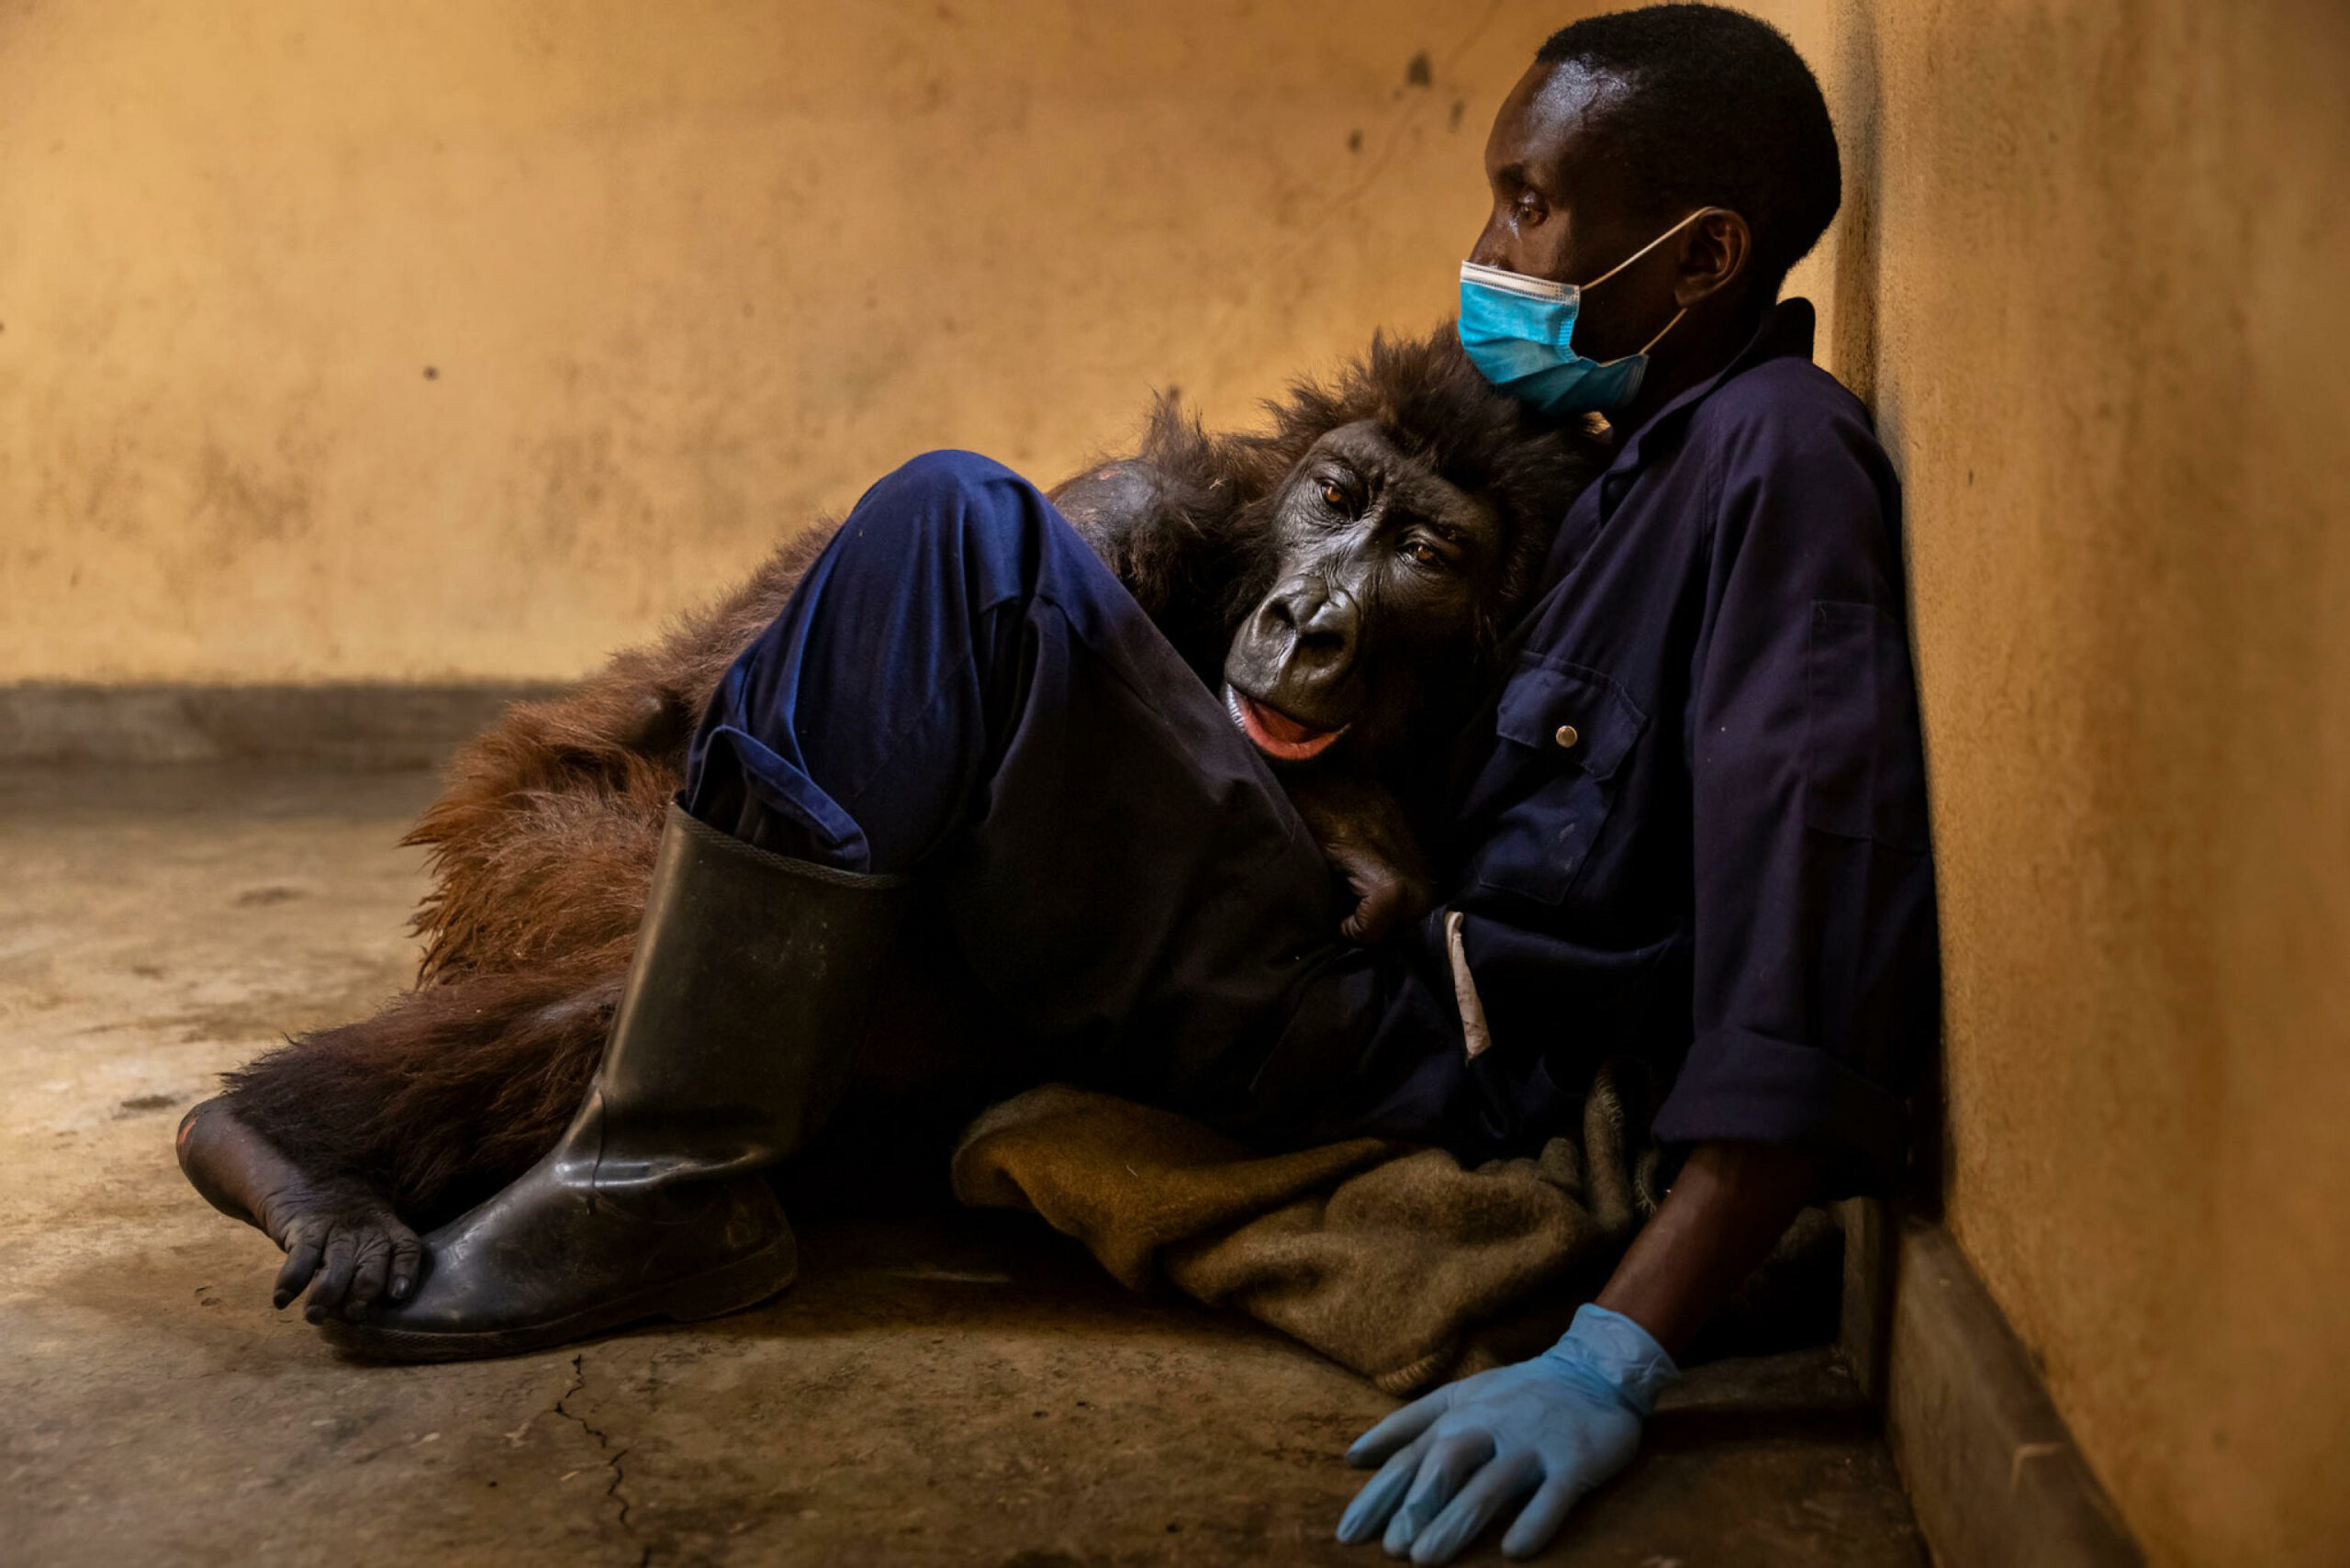 La gorilla Ndakasi, famosa per essere stata fotografata in un selfie del suo custode, è morta a 14 anni nel parco dei Virunga, nell'est della Repubblica democratica del Congo, il 26 settembre scorso dopo una lunga malattia, ma la notizia è stata divulgata dal parco solo questa settimana. +++ FACEBOOK/VIRUNGA NATIONAL PARK +++ ATTENZIONE LA FOTO NON PUO' ESSERE RIPRODOTTA SENZA L'AUTORIZZAZIONE DELLA FONTE CUI SI RINVIA +++